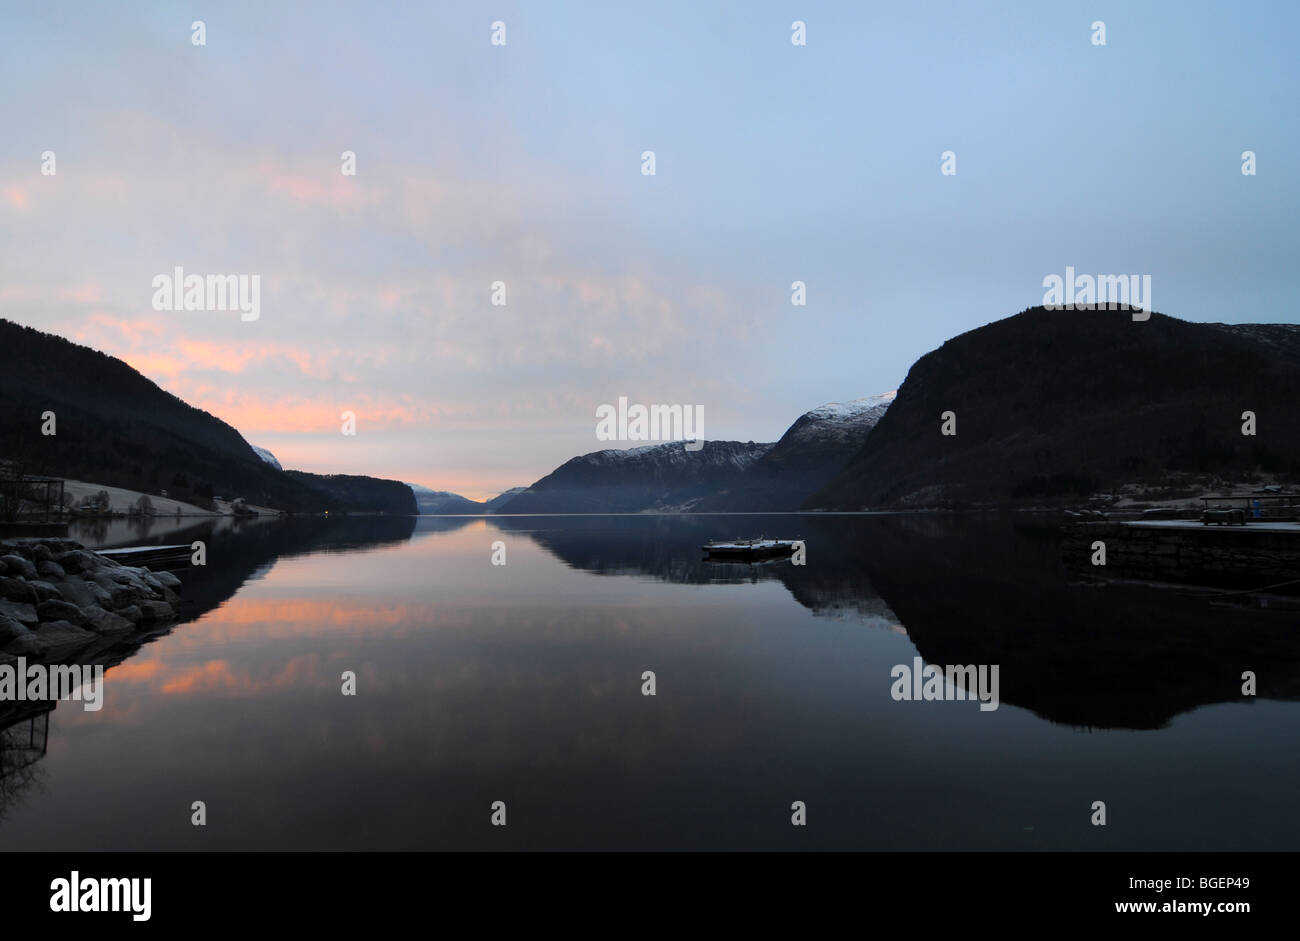 Hornindals vatnet au coucher du soleil. Le lac le plus profond de l'Europe Banque D'Images